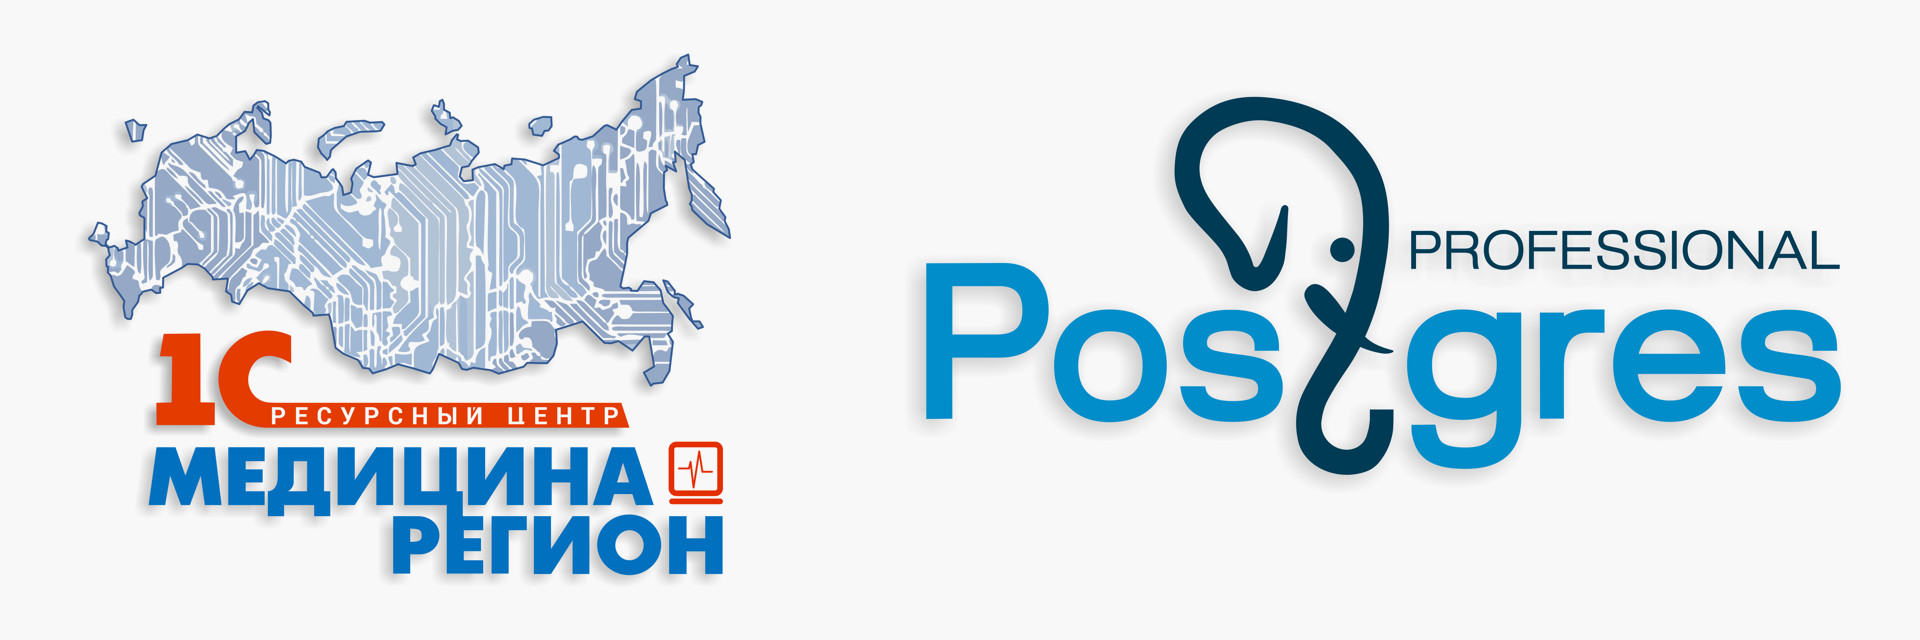 Postgres Professional выполнил аудит СУБД Postgres Pro для медицинской информационной системы Тюменской области